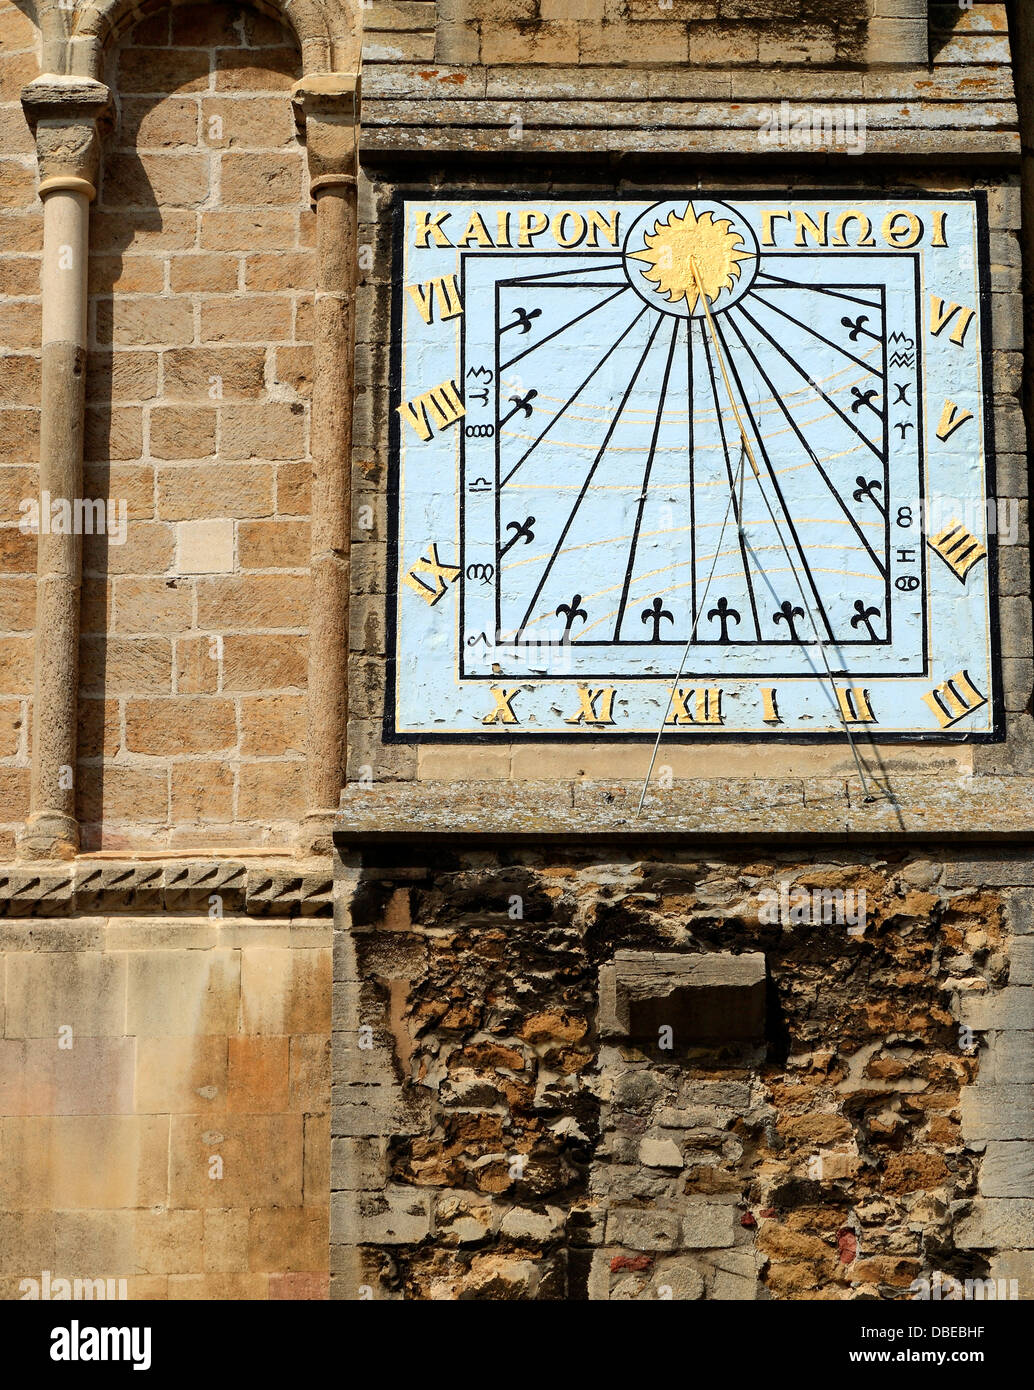 Ely Cathedral, Sonnenuhr am südlichen Querschiff Wand, griechische Inschrift "Zeit wissen", Cambridgeshire England UK Sonnenuhren Stockfoto